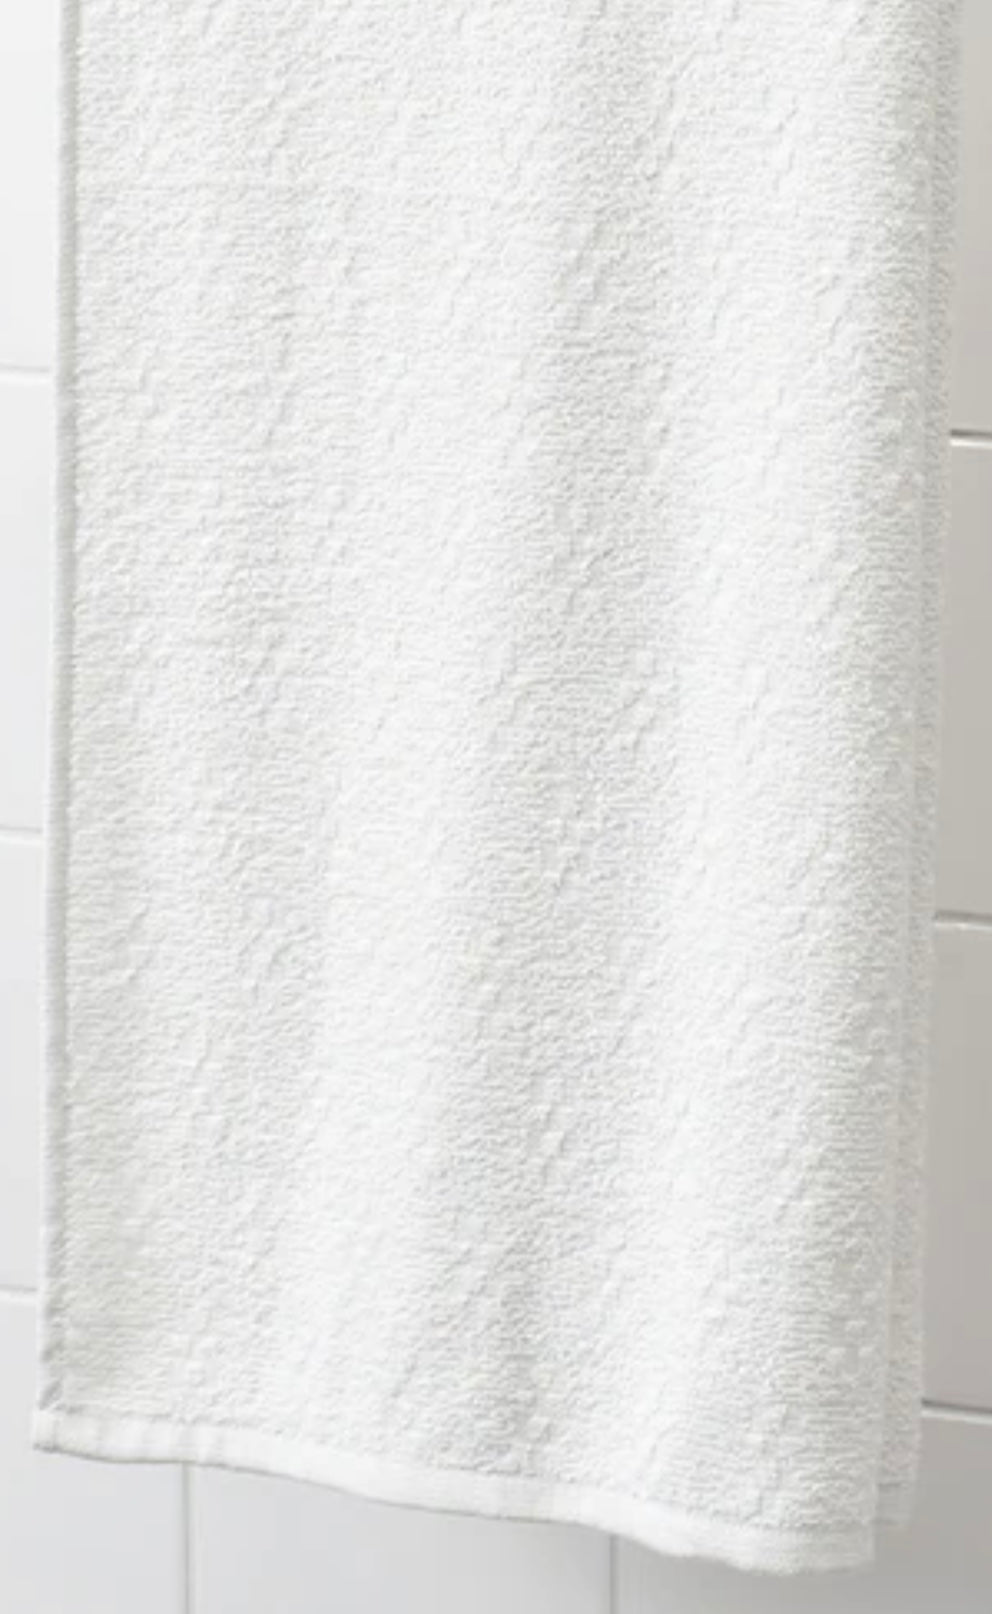 Ped Towel |White Colour 16”x 26”| Dozen|